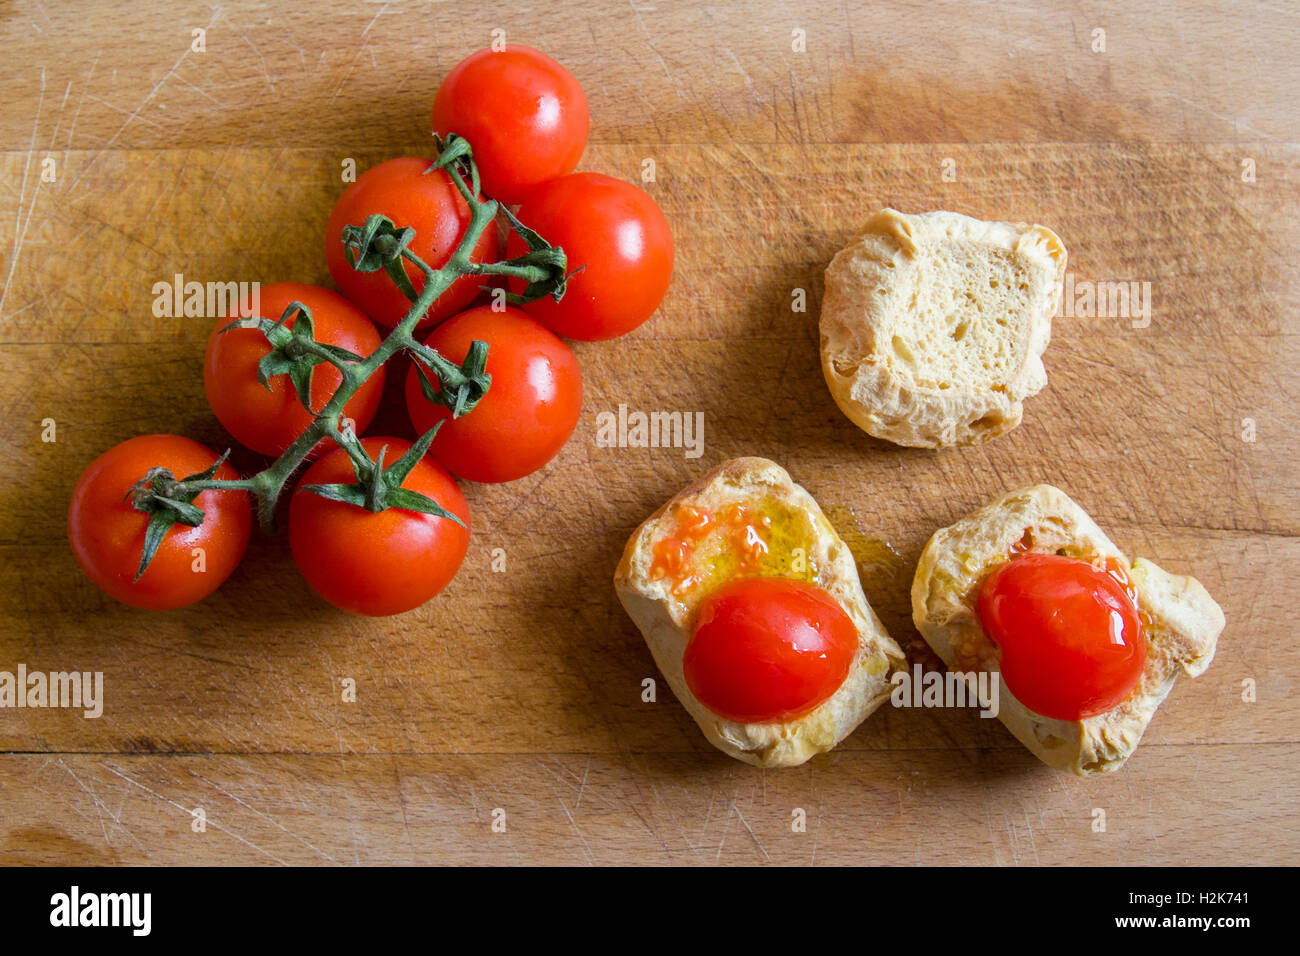 Pane con pomodori sul tagliere. Frise, friselle. Foto Stock